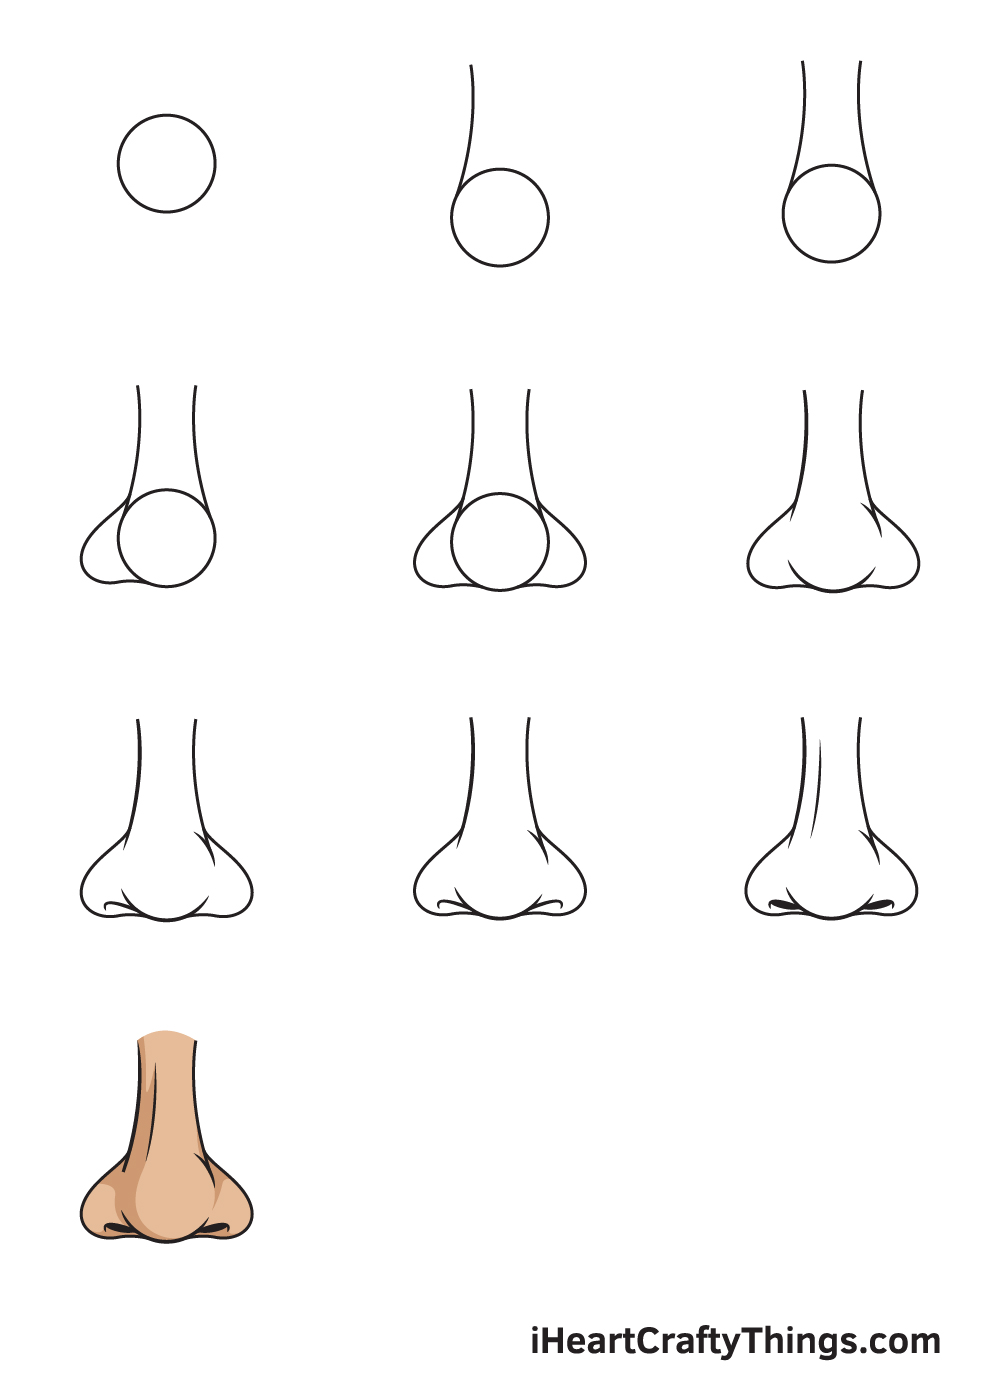 Drawing Nose in 10 Easy Steps - Hướng dẫn chi tiết cách vẽ mũi đơn giản với 9 bước cơ bản